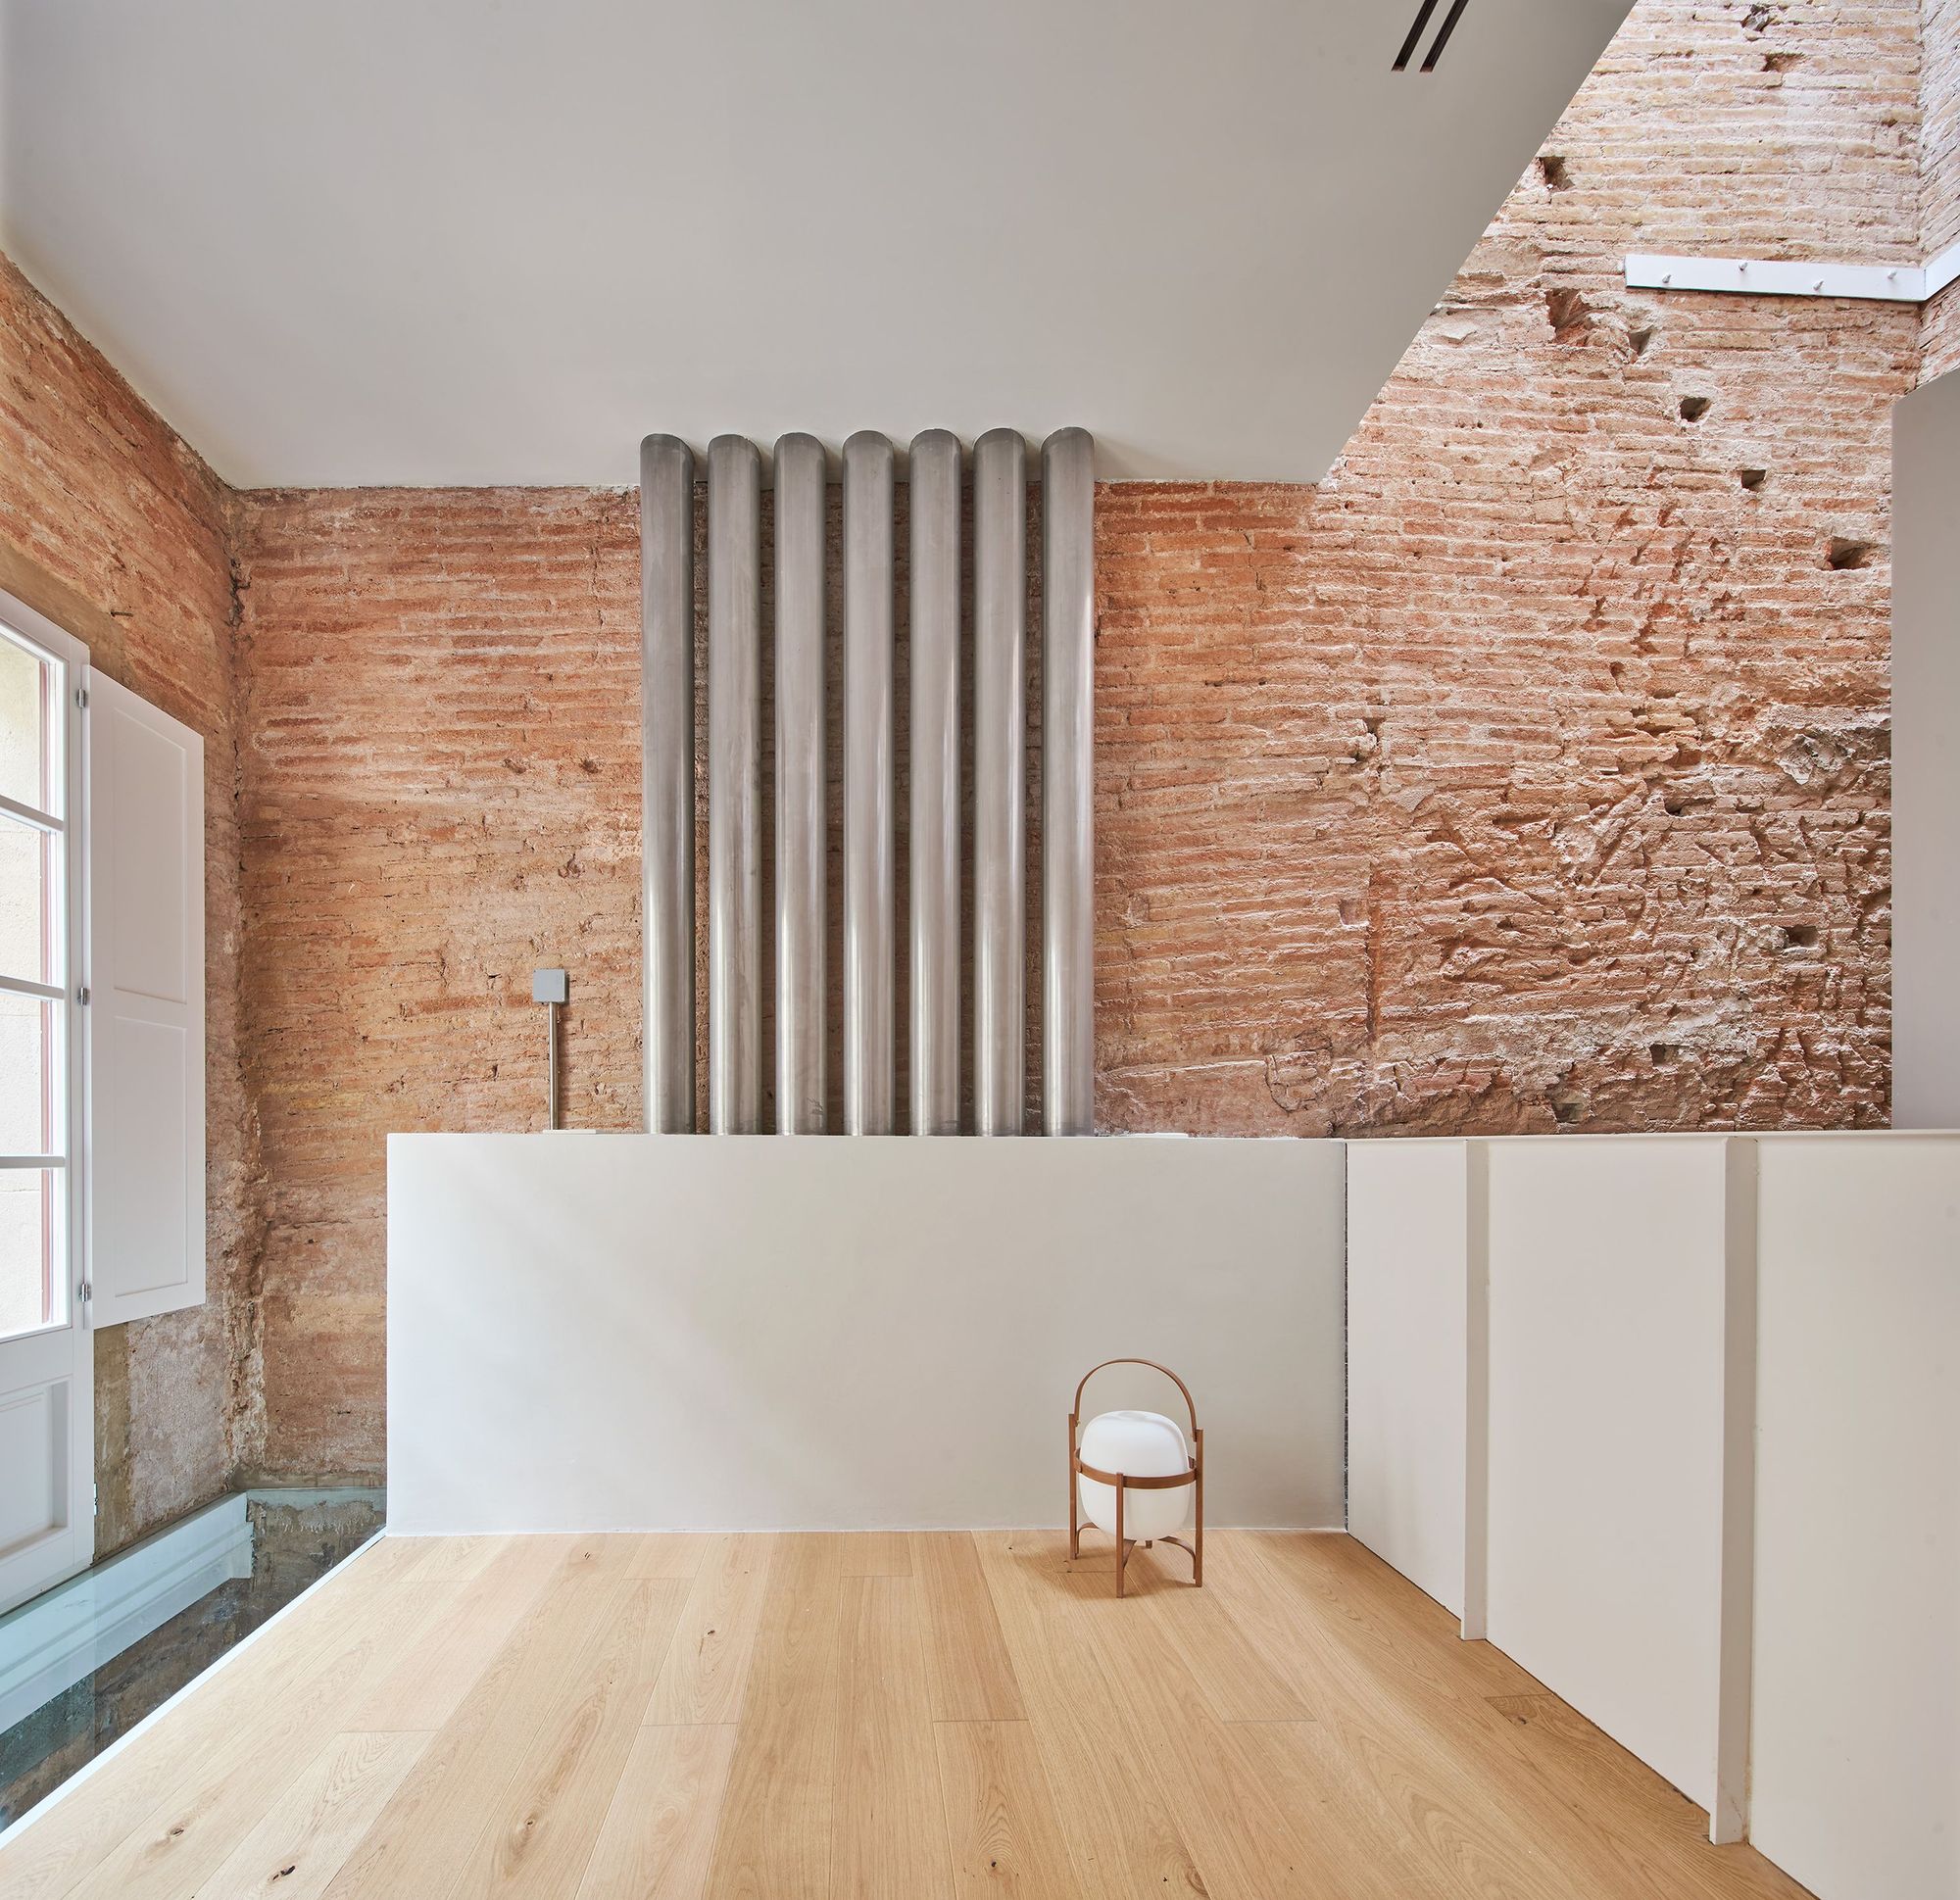 图片[4]|旋转楼梯组织空间，BSP20 之家 / Raúl Sánchez|ART-Arrakis | 建筑室内设计的创新与灵感